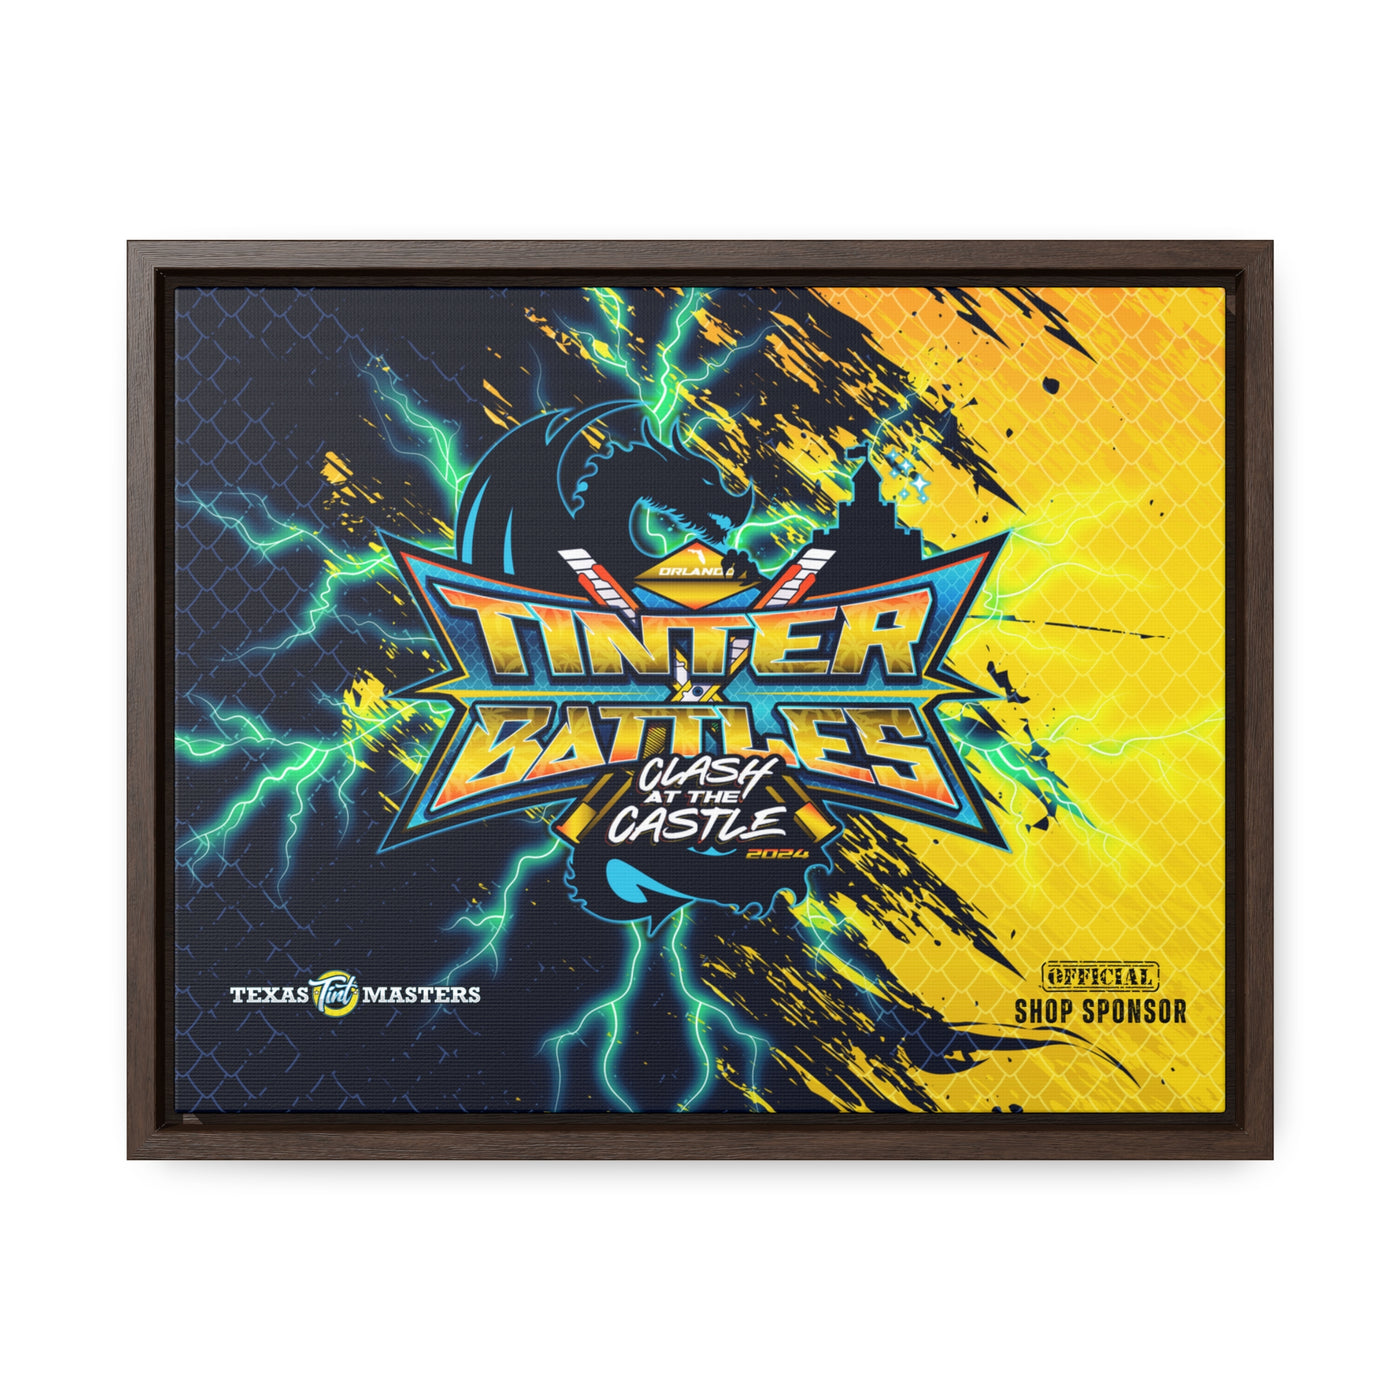 Texas Tint Masters x Tinter Battles 2024 Shop Sponsor Wrap Canvas